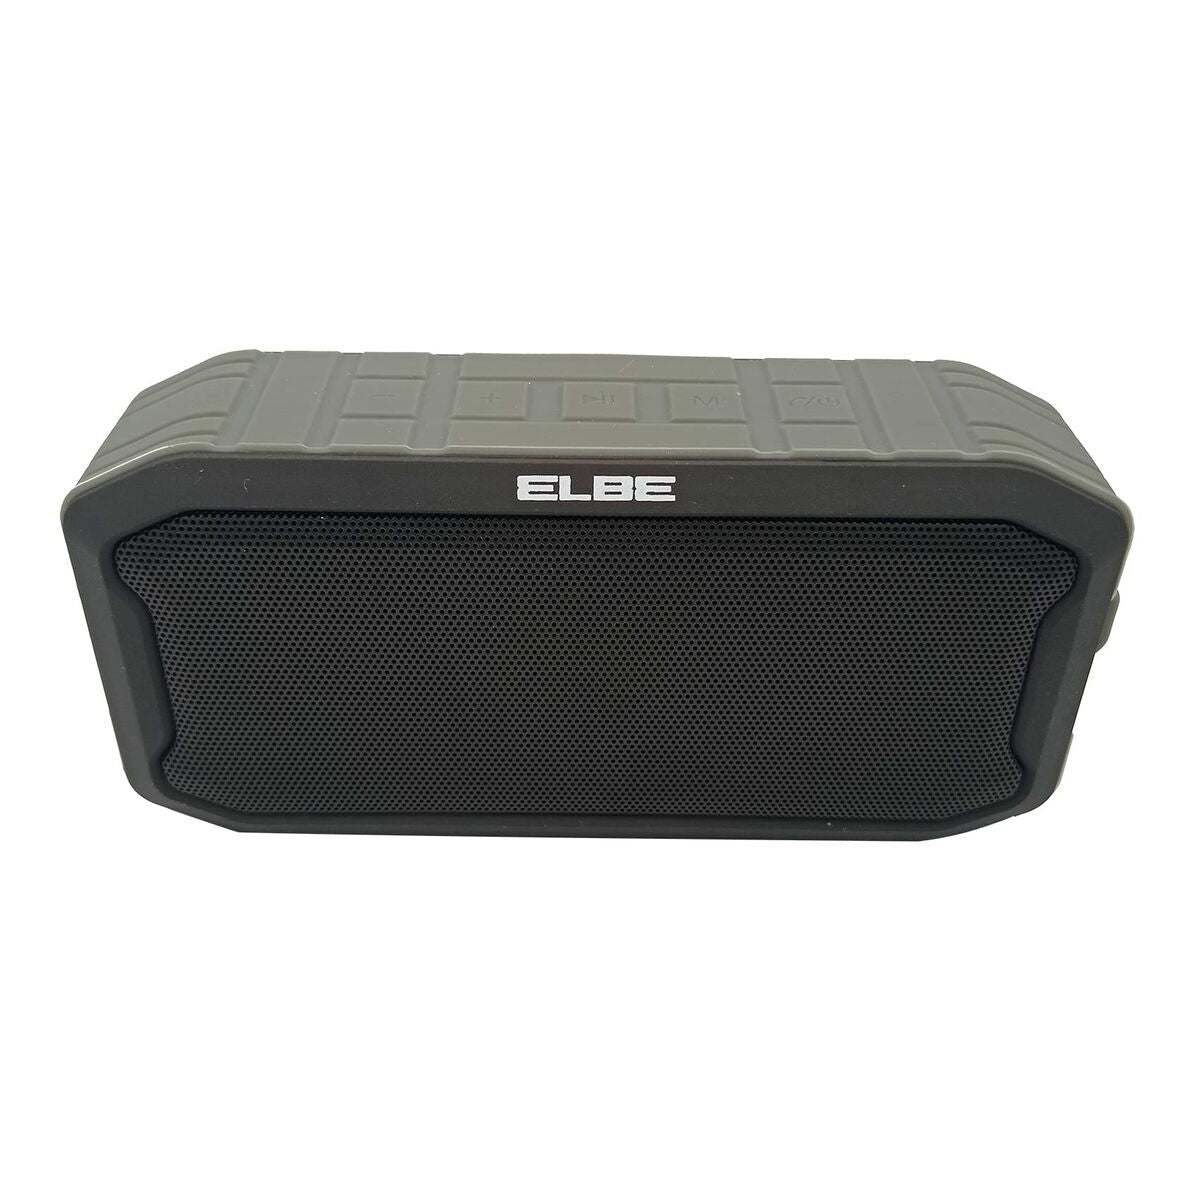 Portable loudspeaker Elbe black